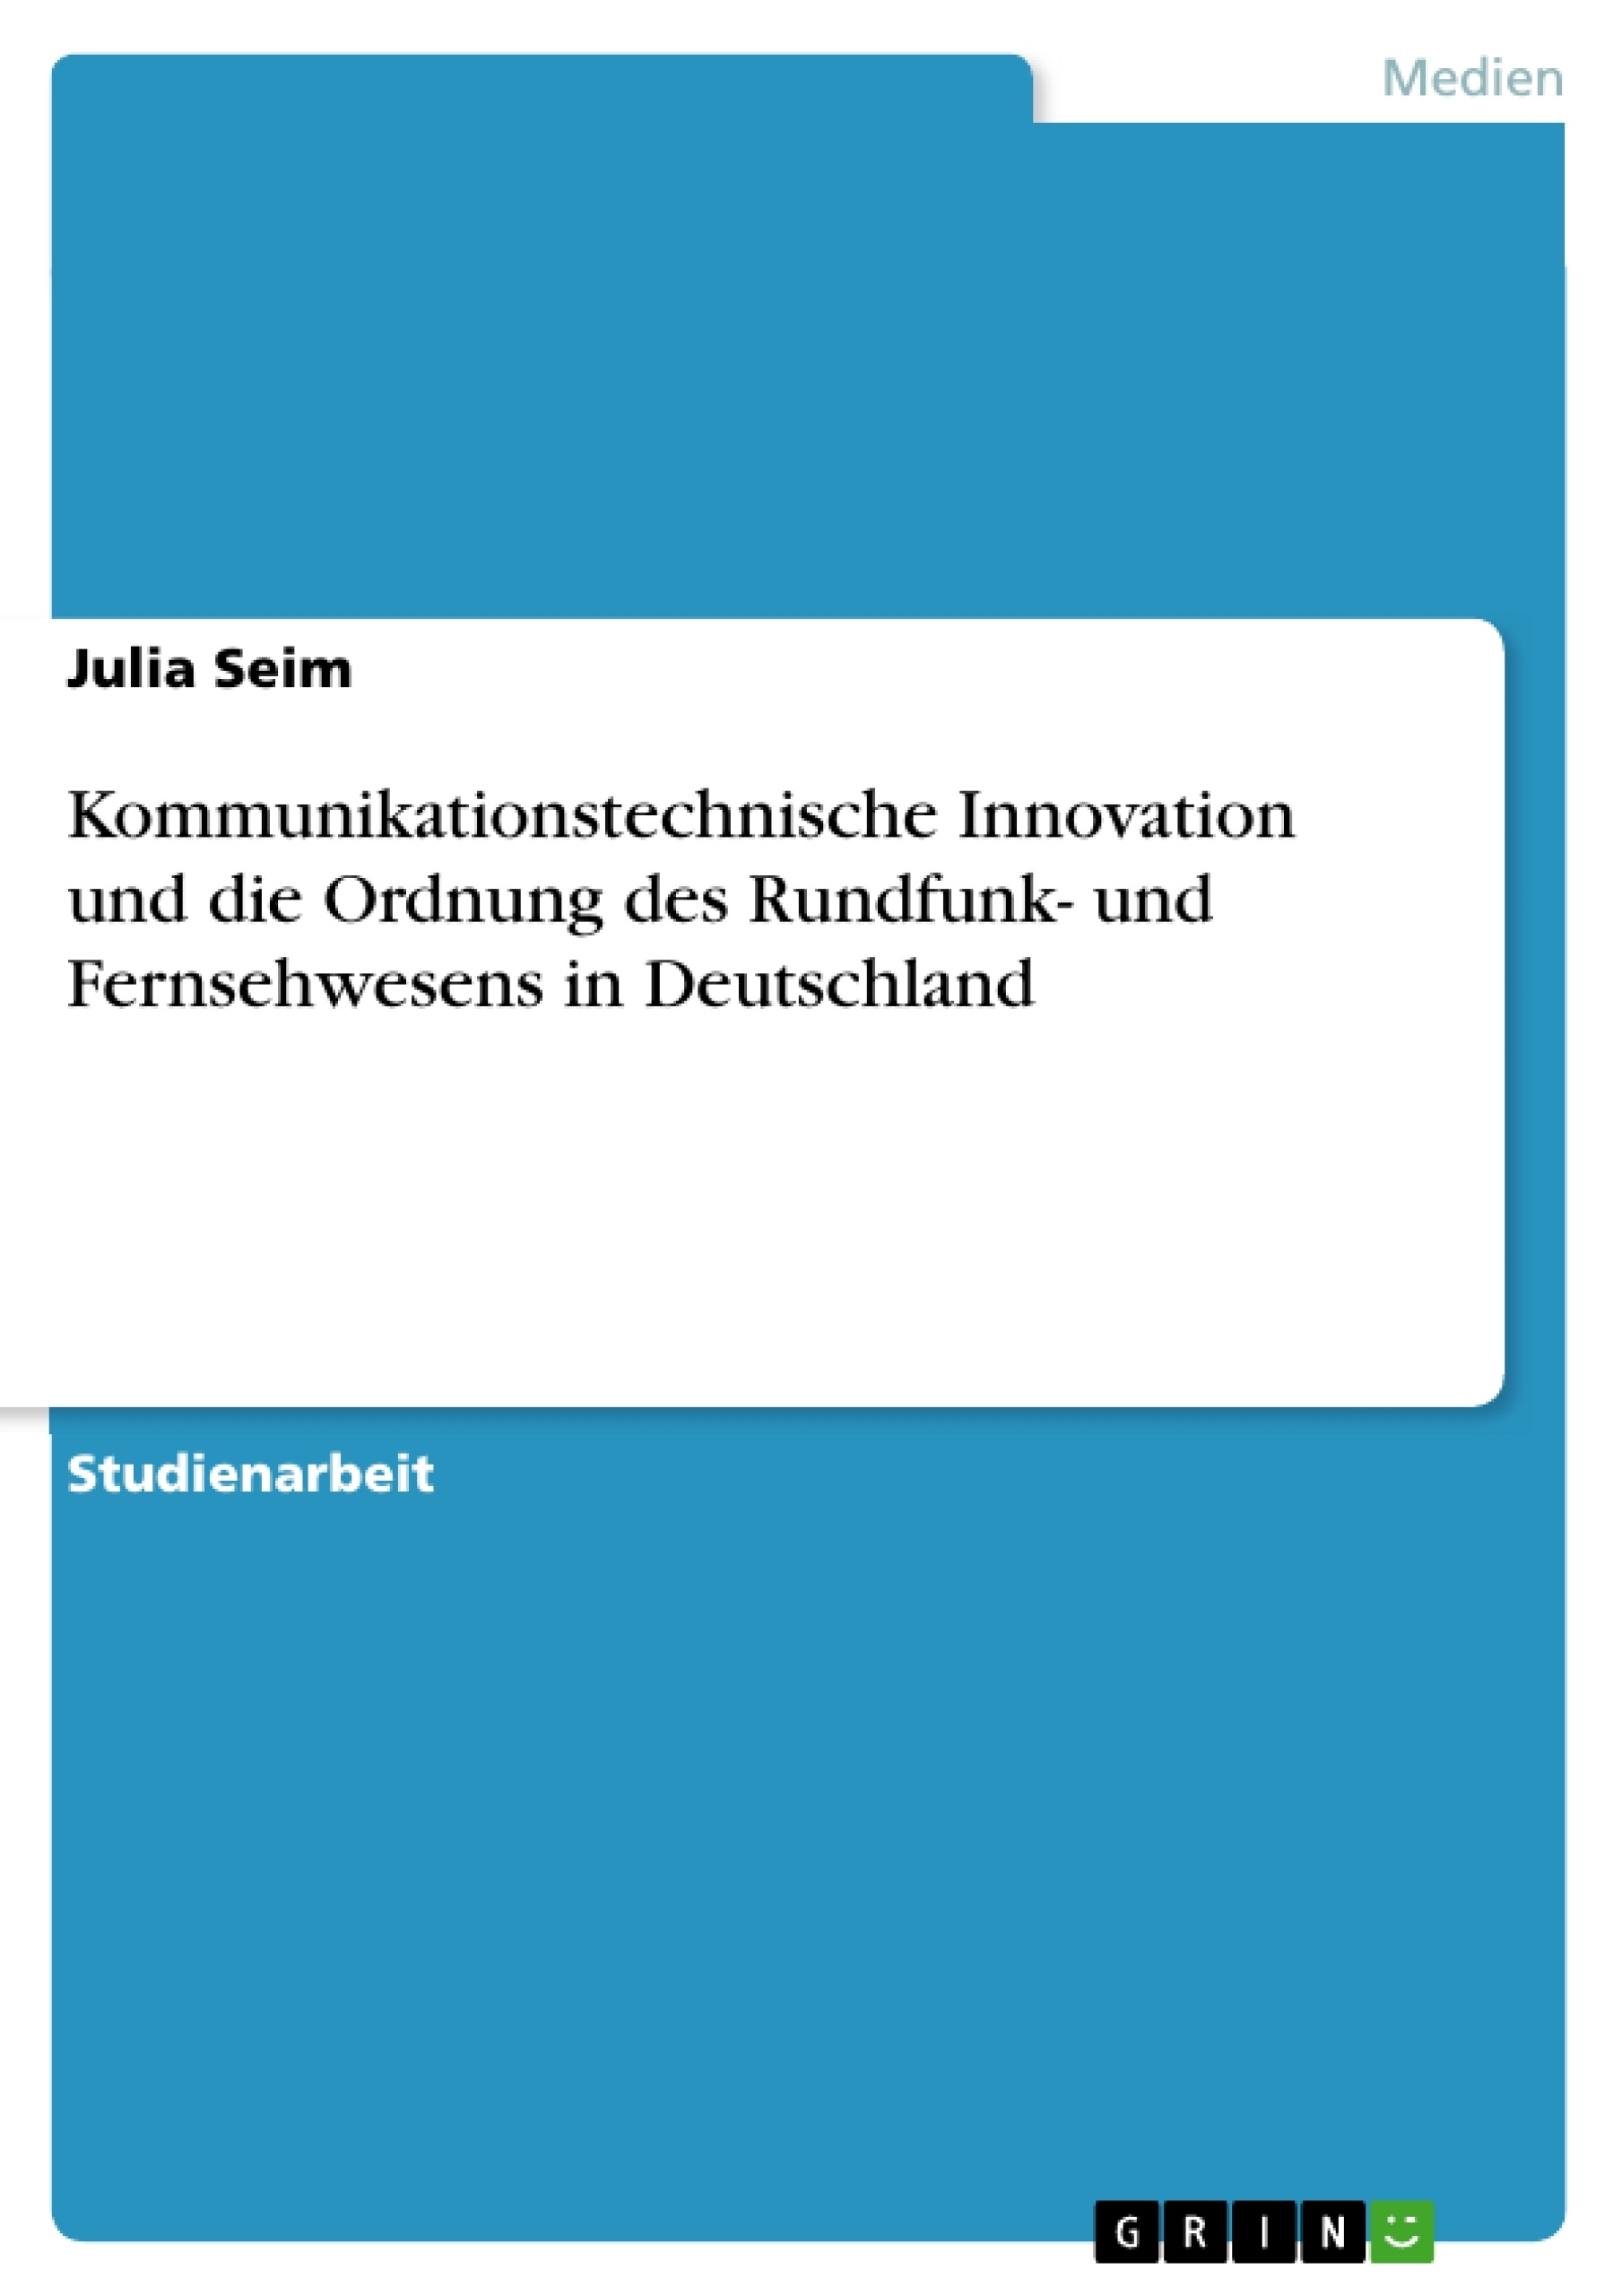 Titre: Kommunikationstechnische Innovation und die Ordnung des Rundfunk- und Fernsehwesens in Deutschland